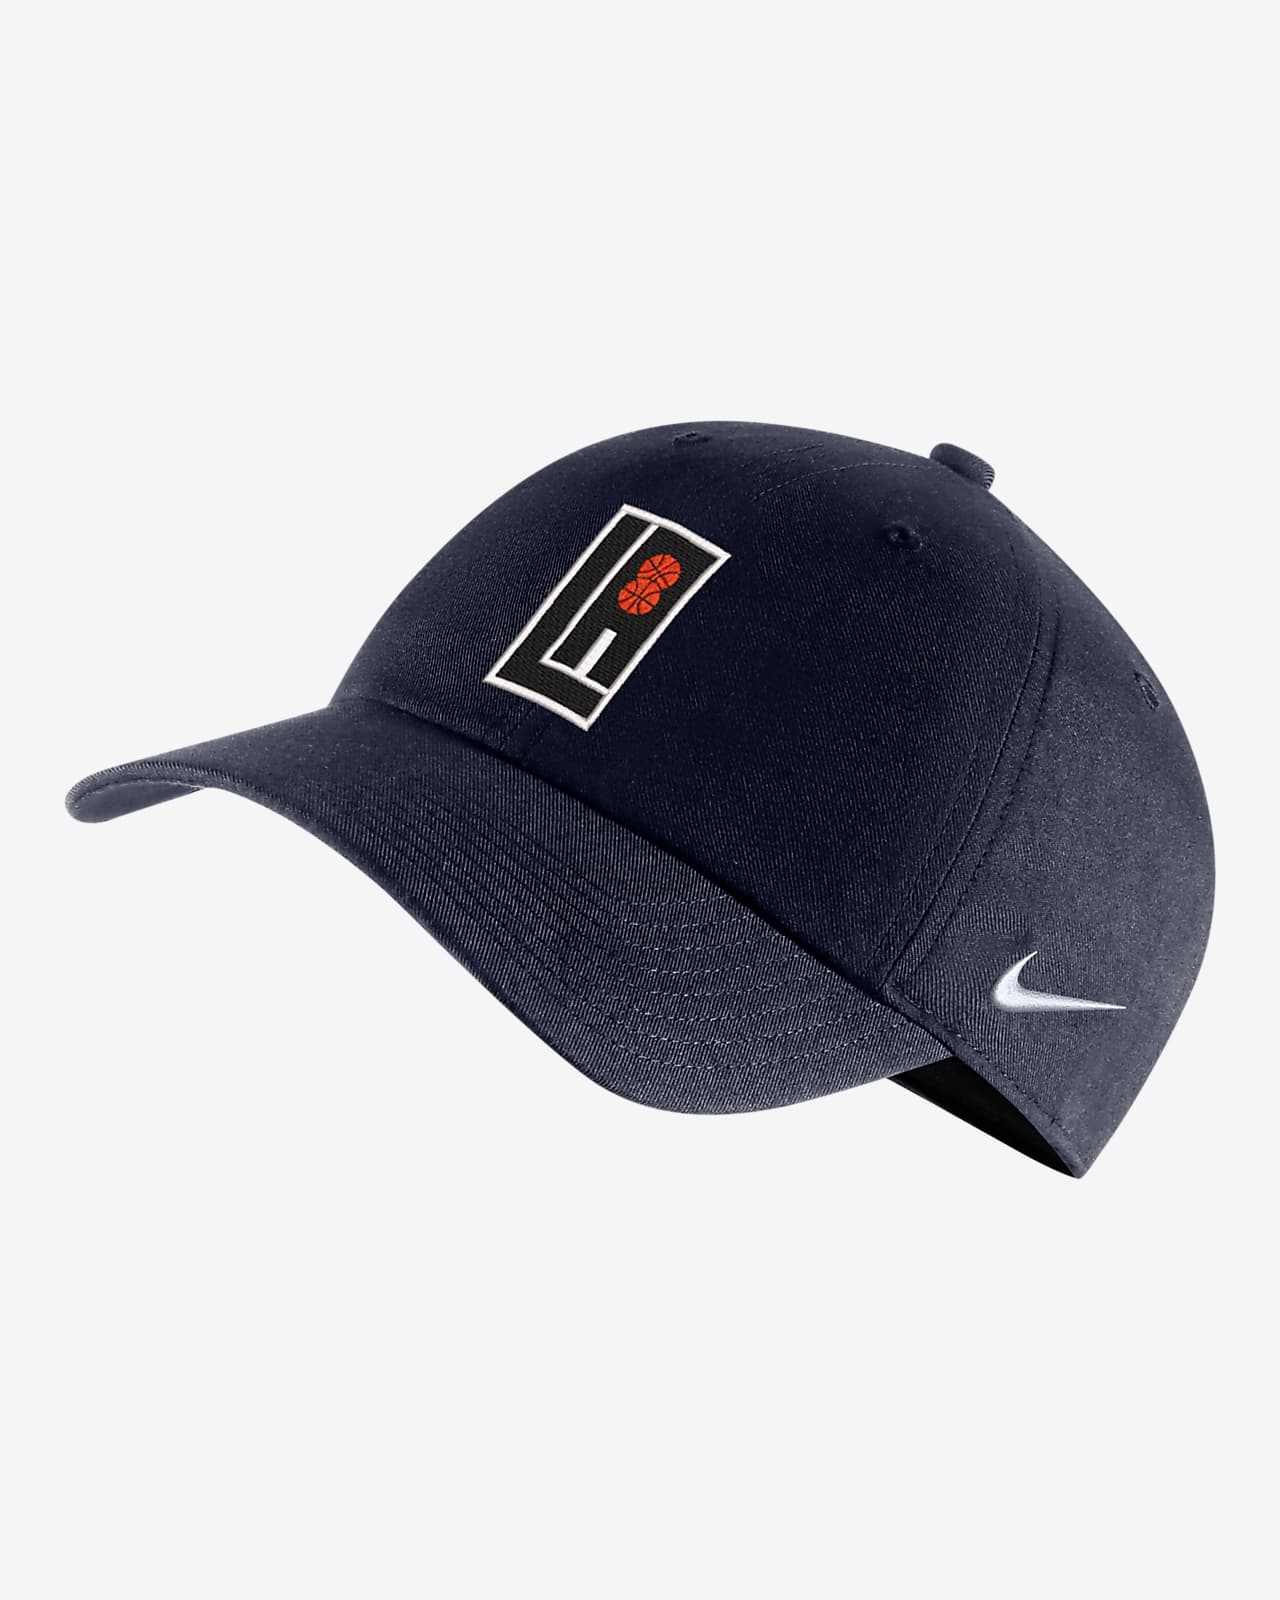 LA Clippers City Edition Nike NBA Adjustable Cap